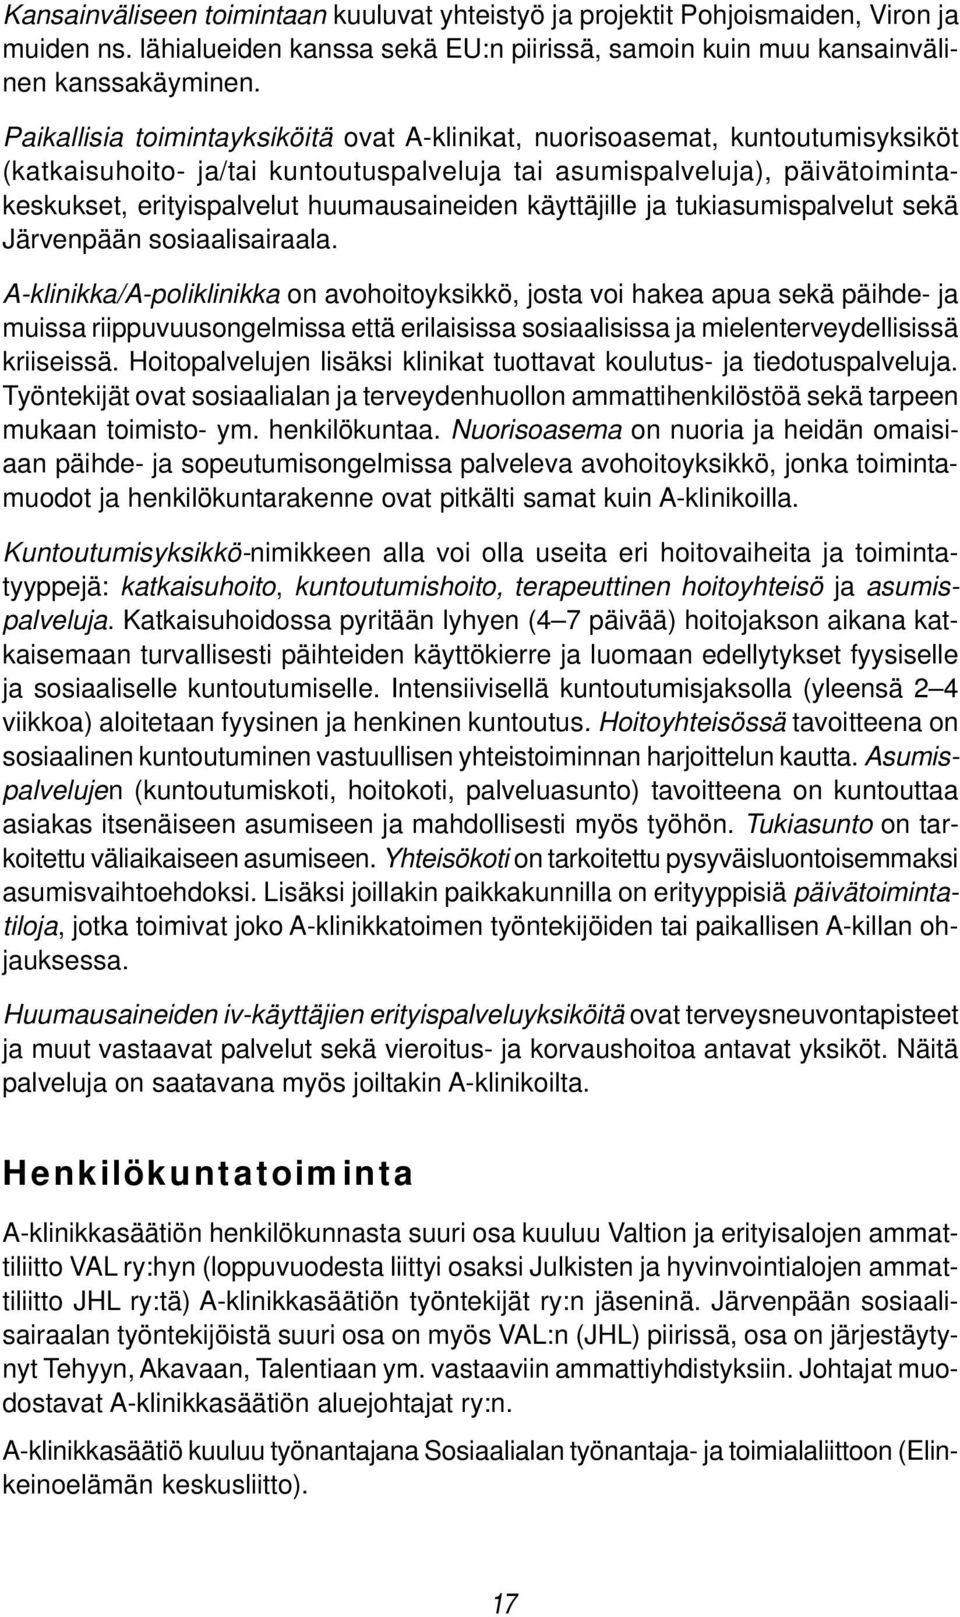 huumausaineiden käyttäjille ja tukiasumispalvelut sekä Järvenpään sosiaalisairaala.